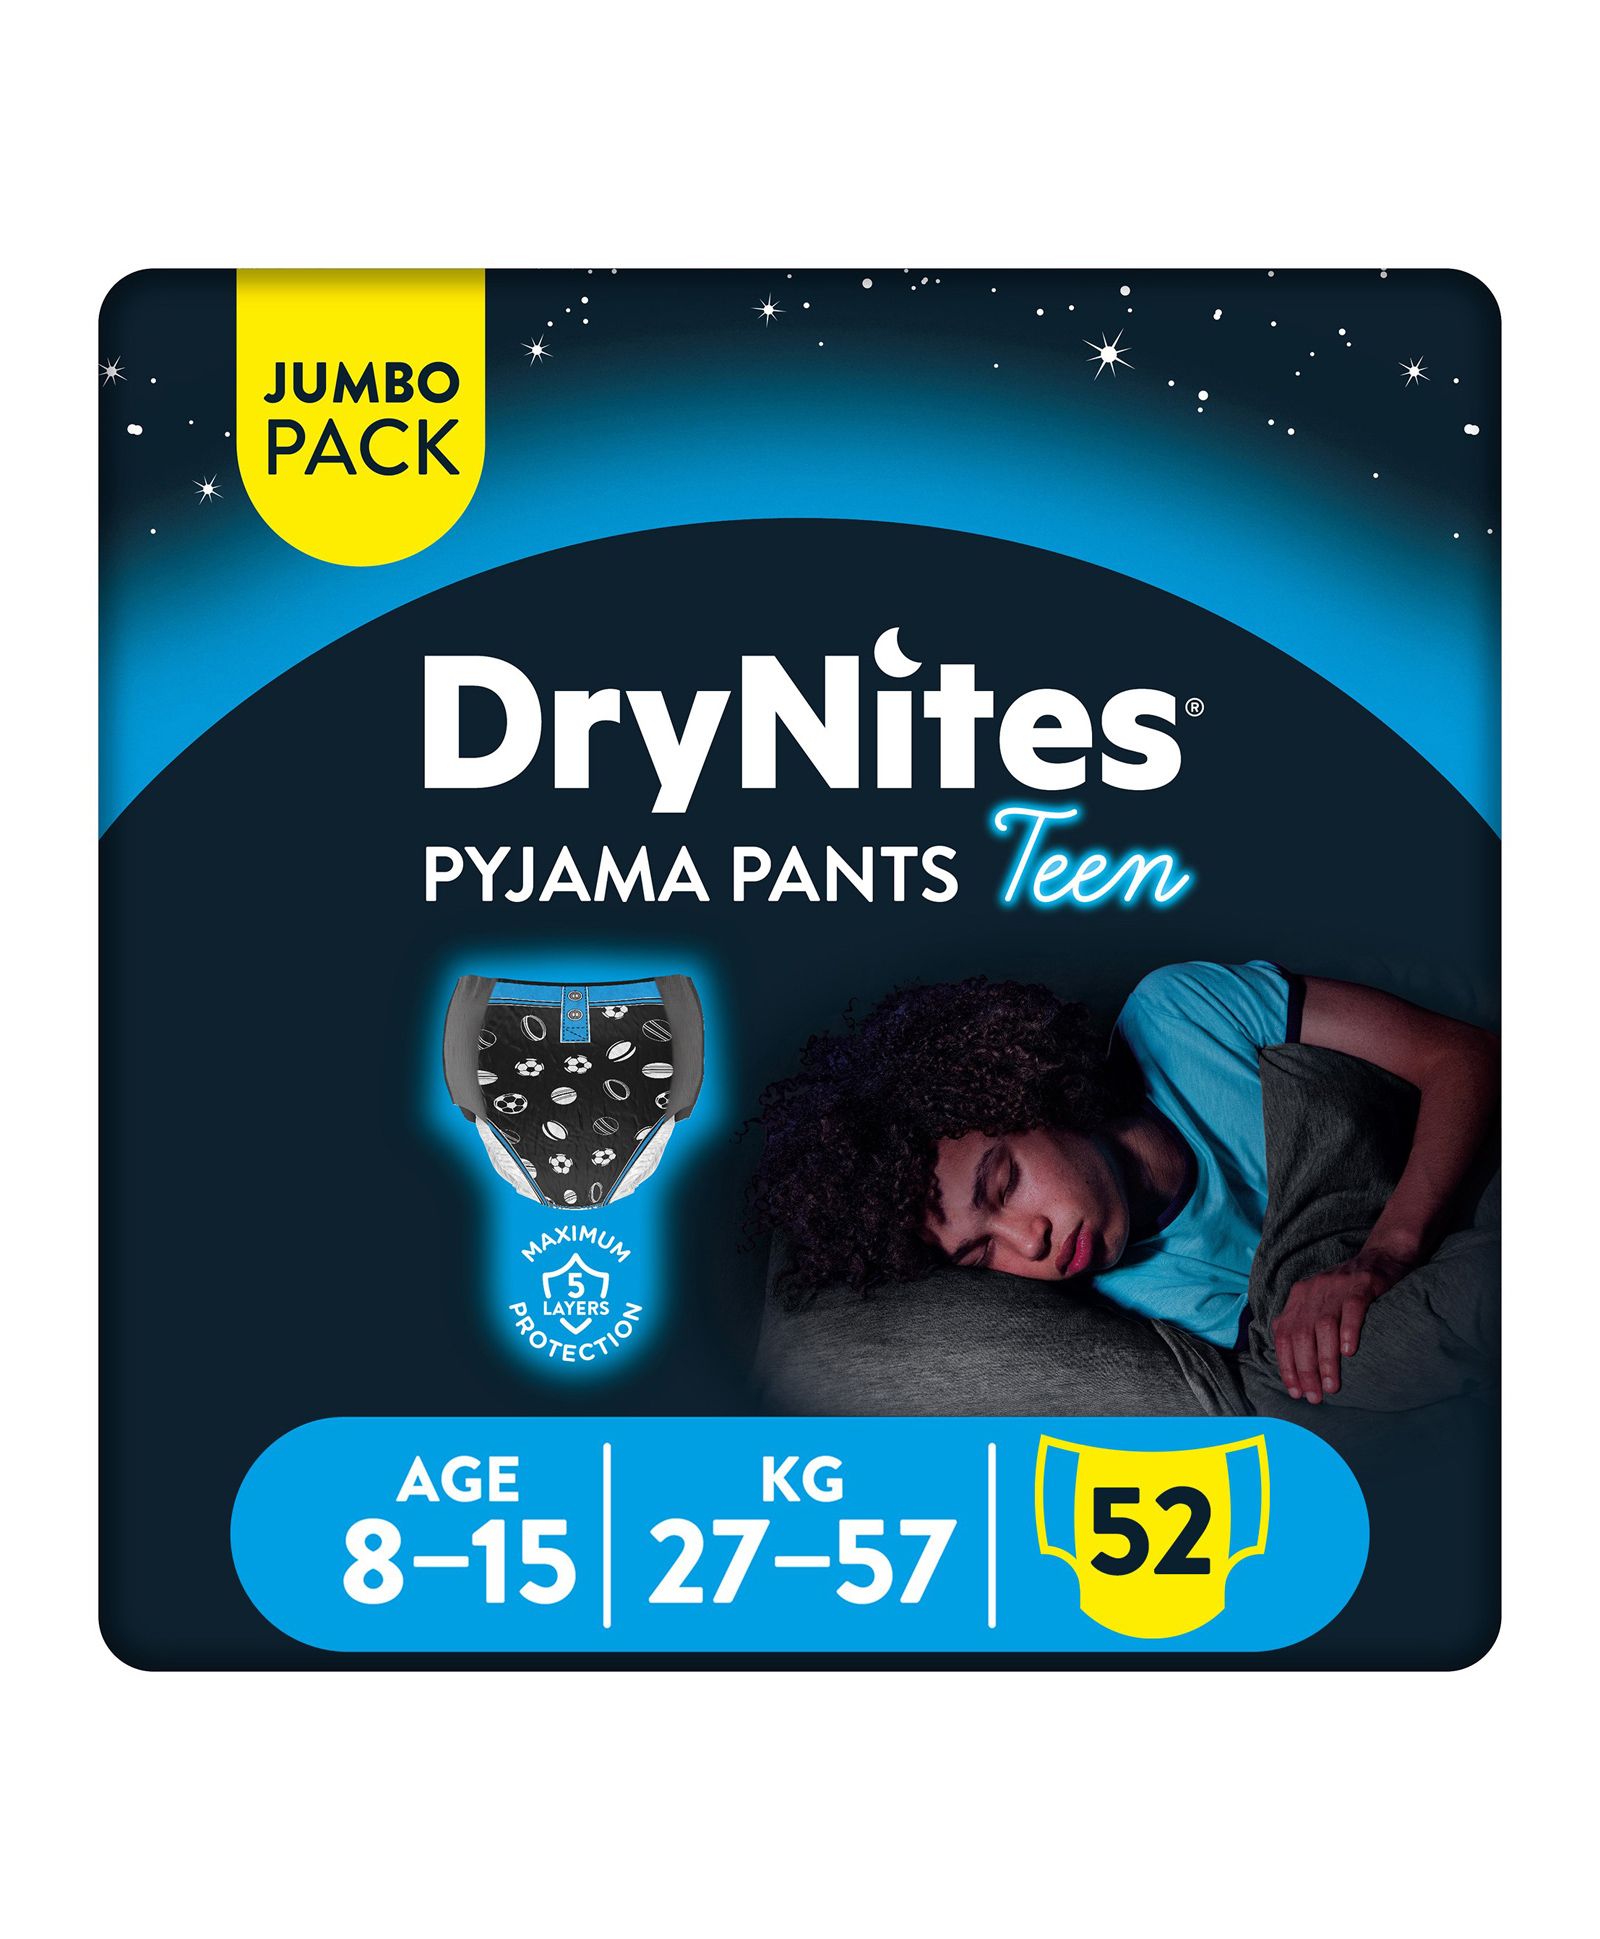 Huggies Dry Nights Pyjama Pant Diaper For Boys 52 Diapers Online In Uae Buy At Best Price 4055